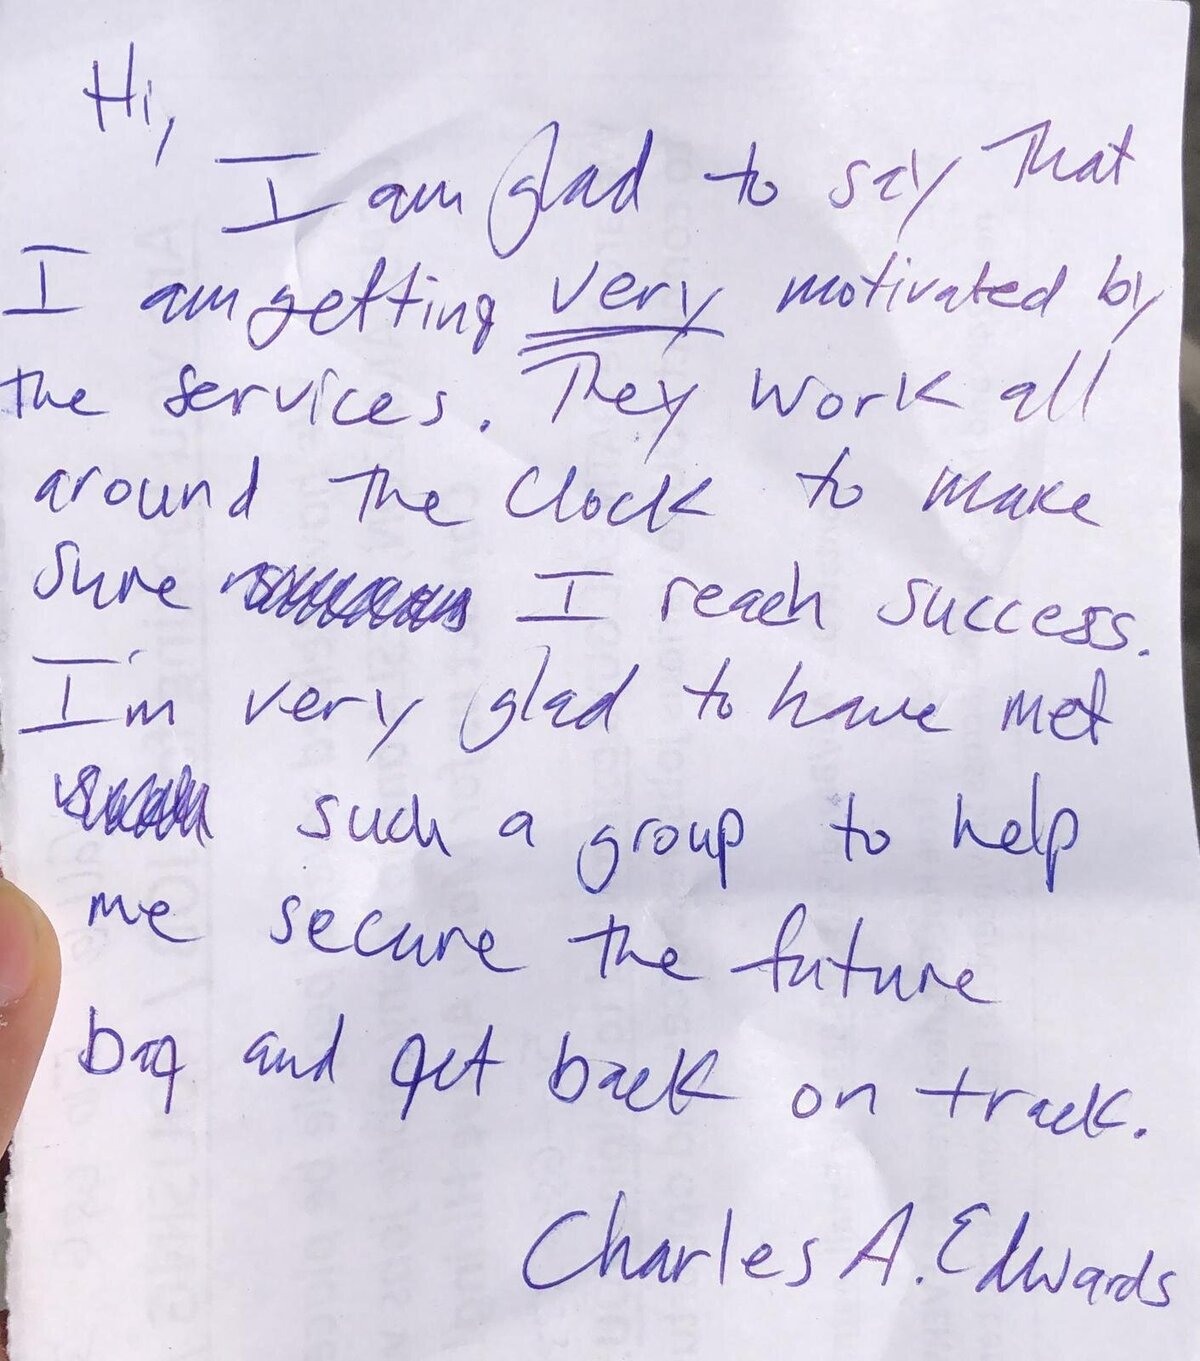 Charles letter